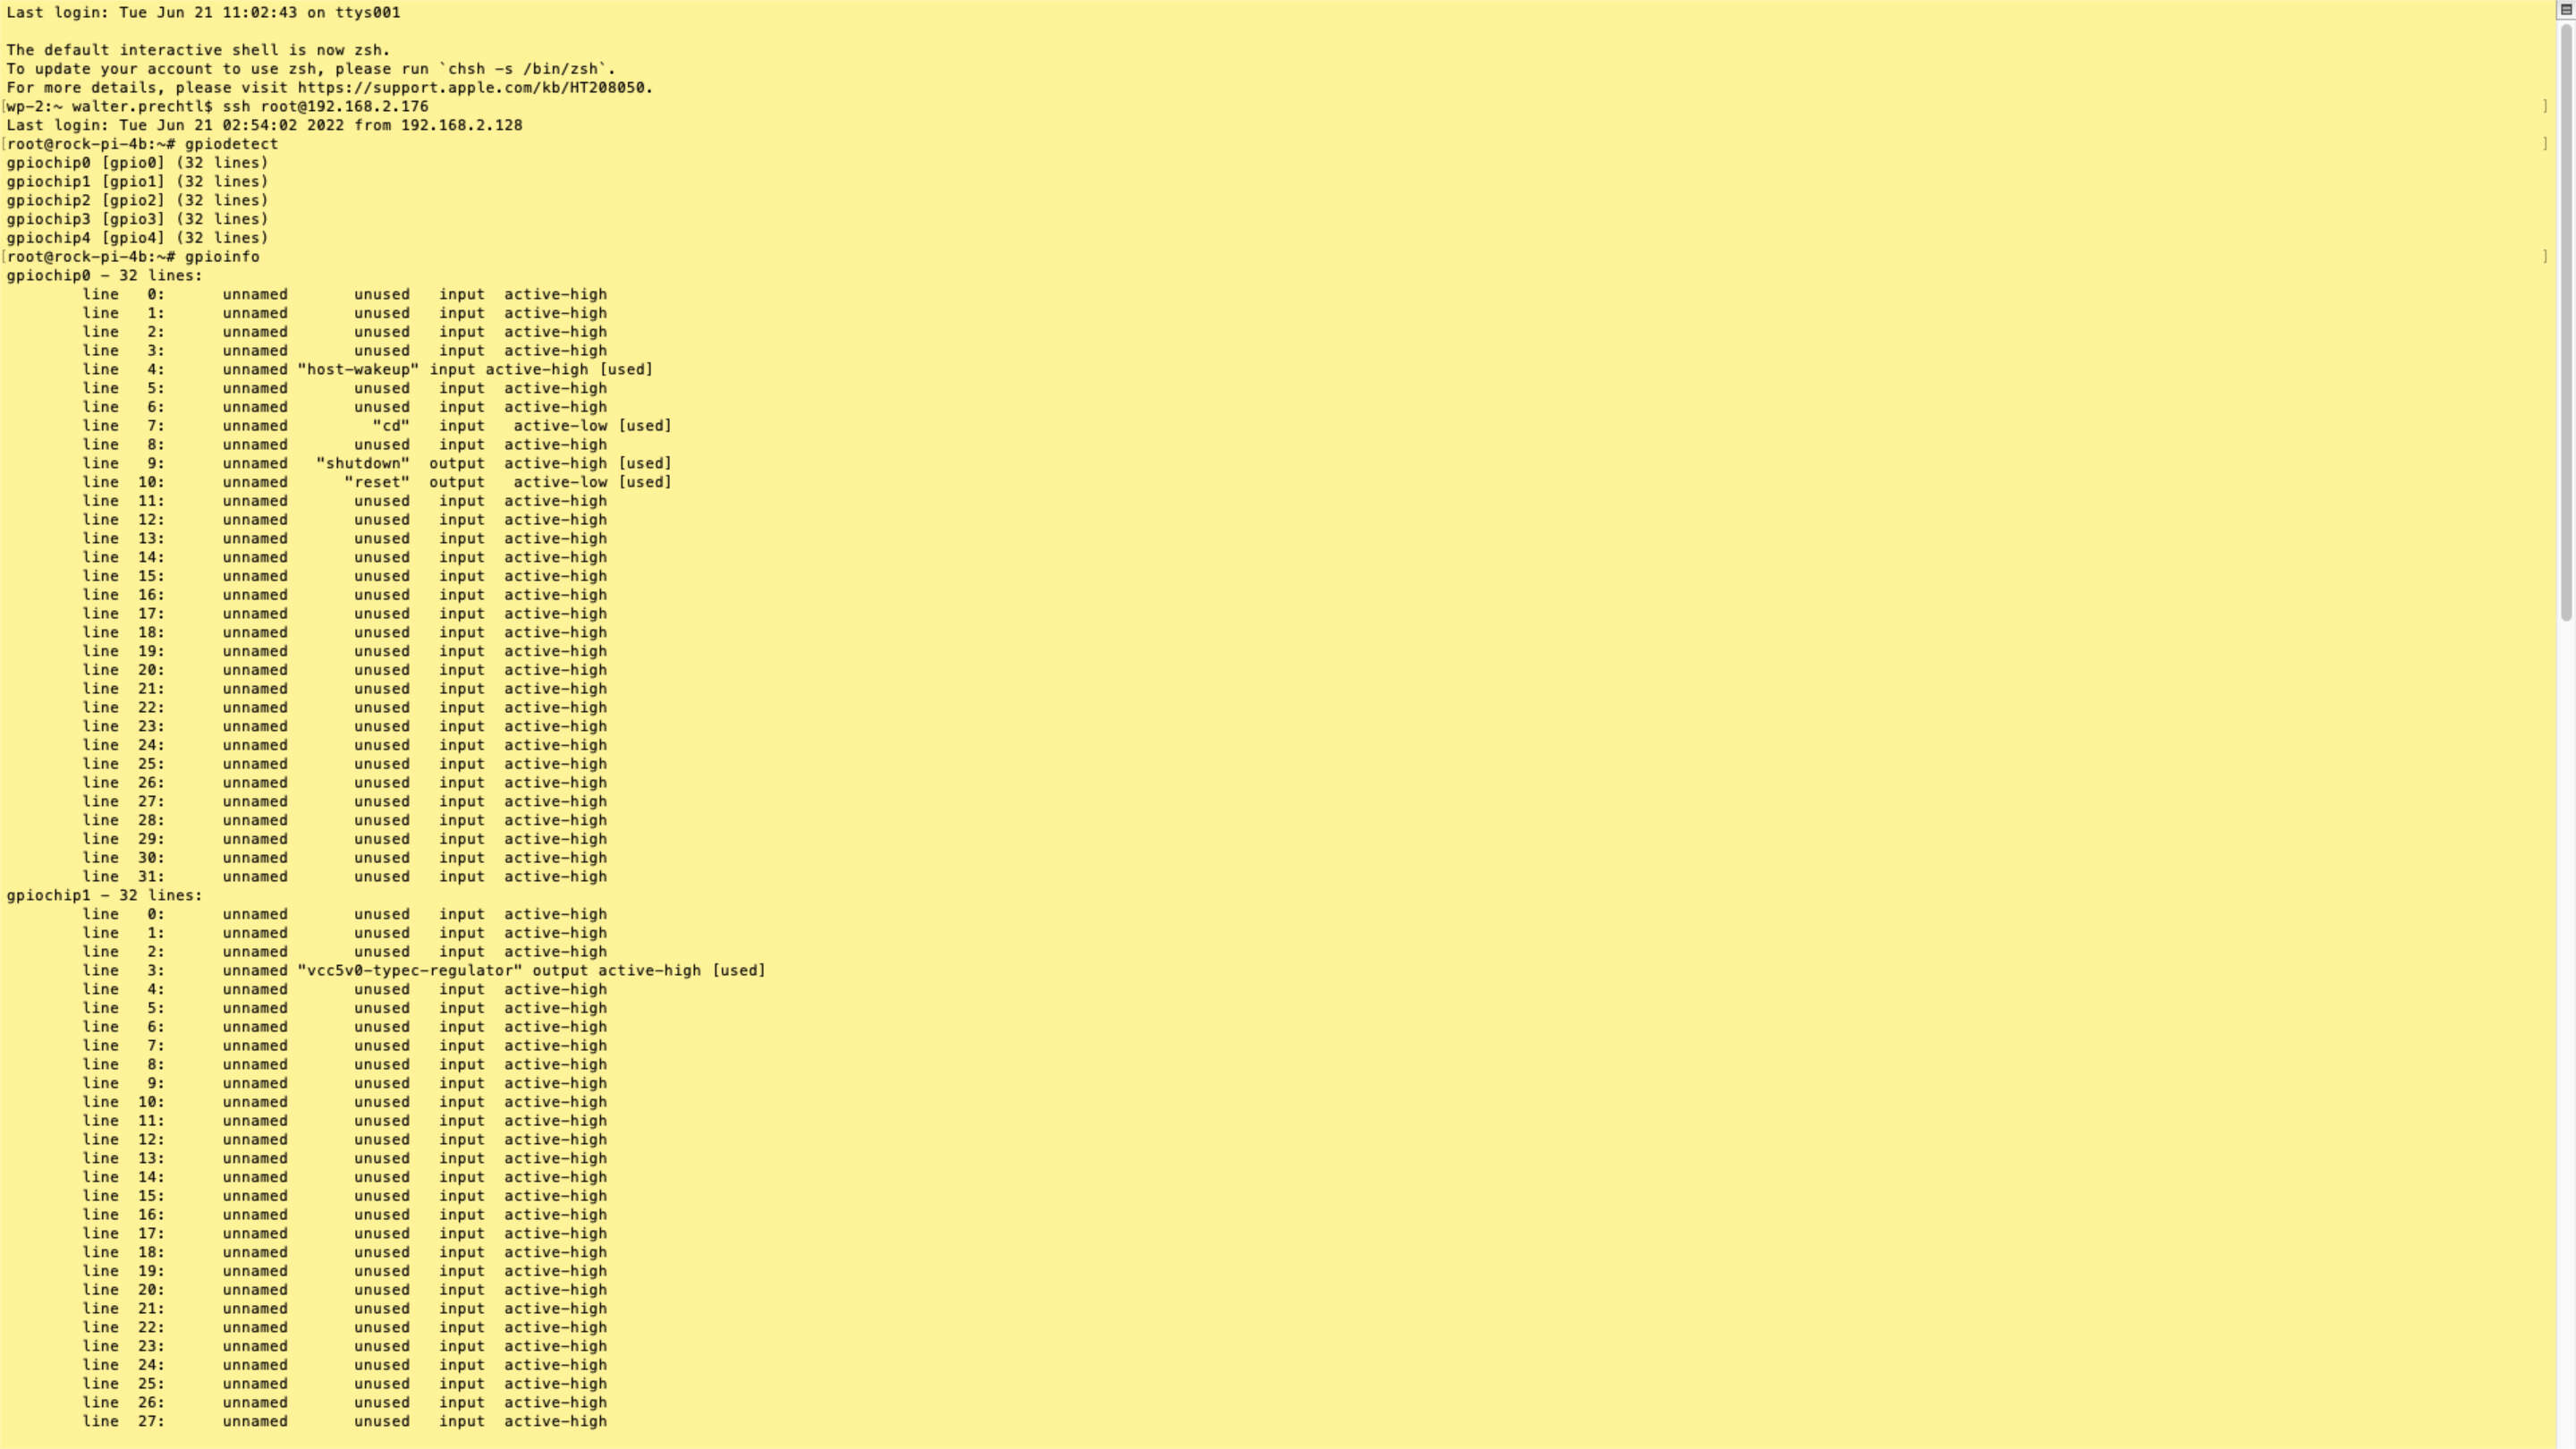 임베디드 소프트웨어 - libgpiod 검은색 텍스트가 있는 노란색 화면